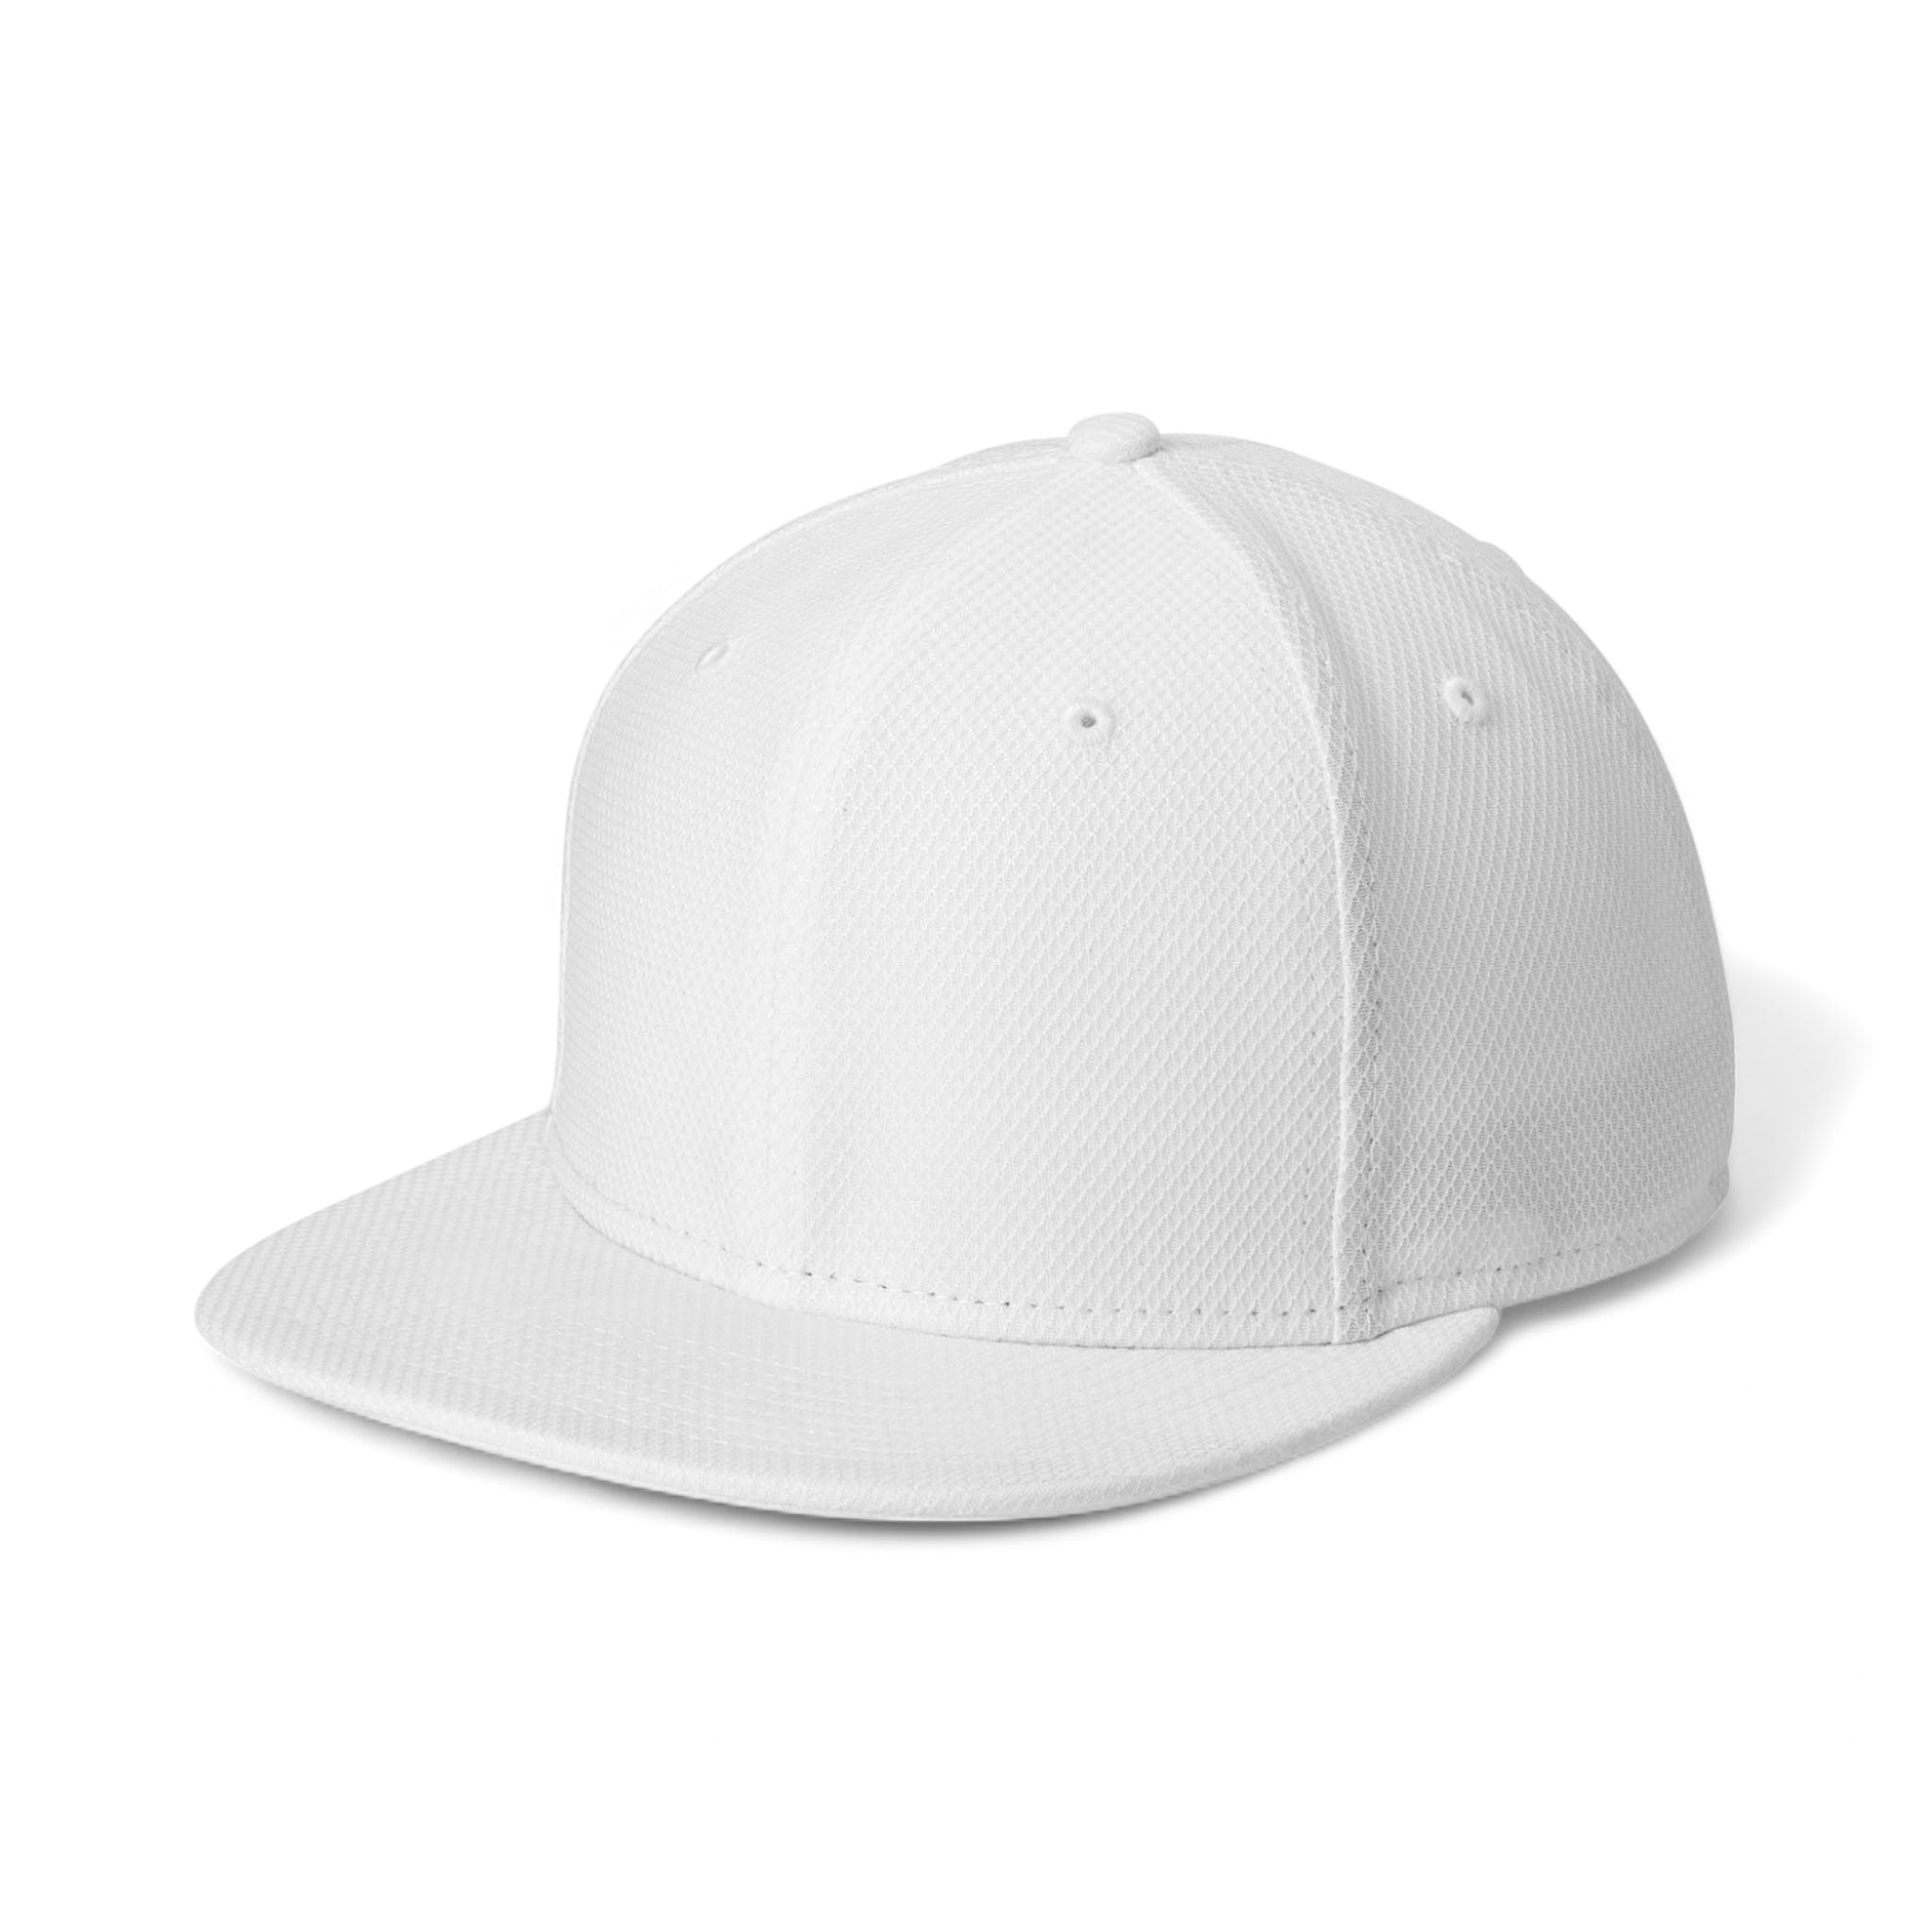 Side view of New Era NE404 custom hat in white